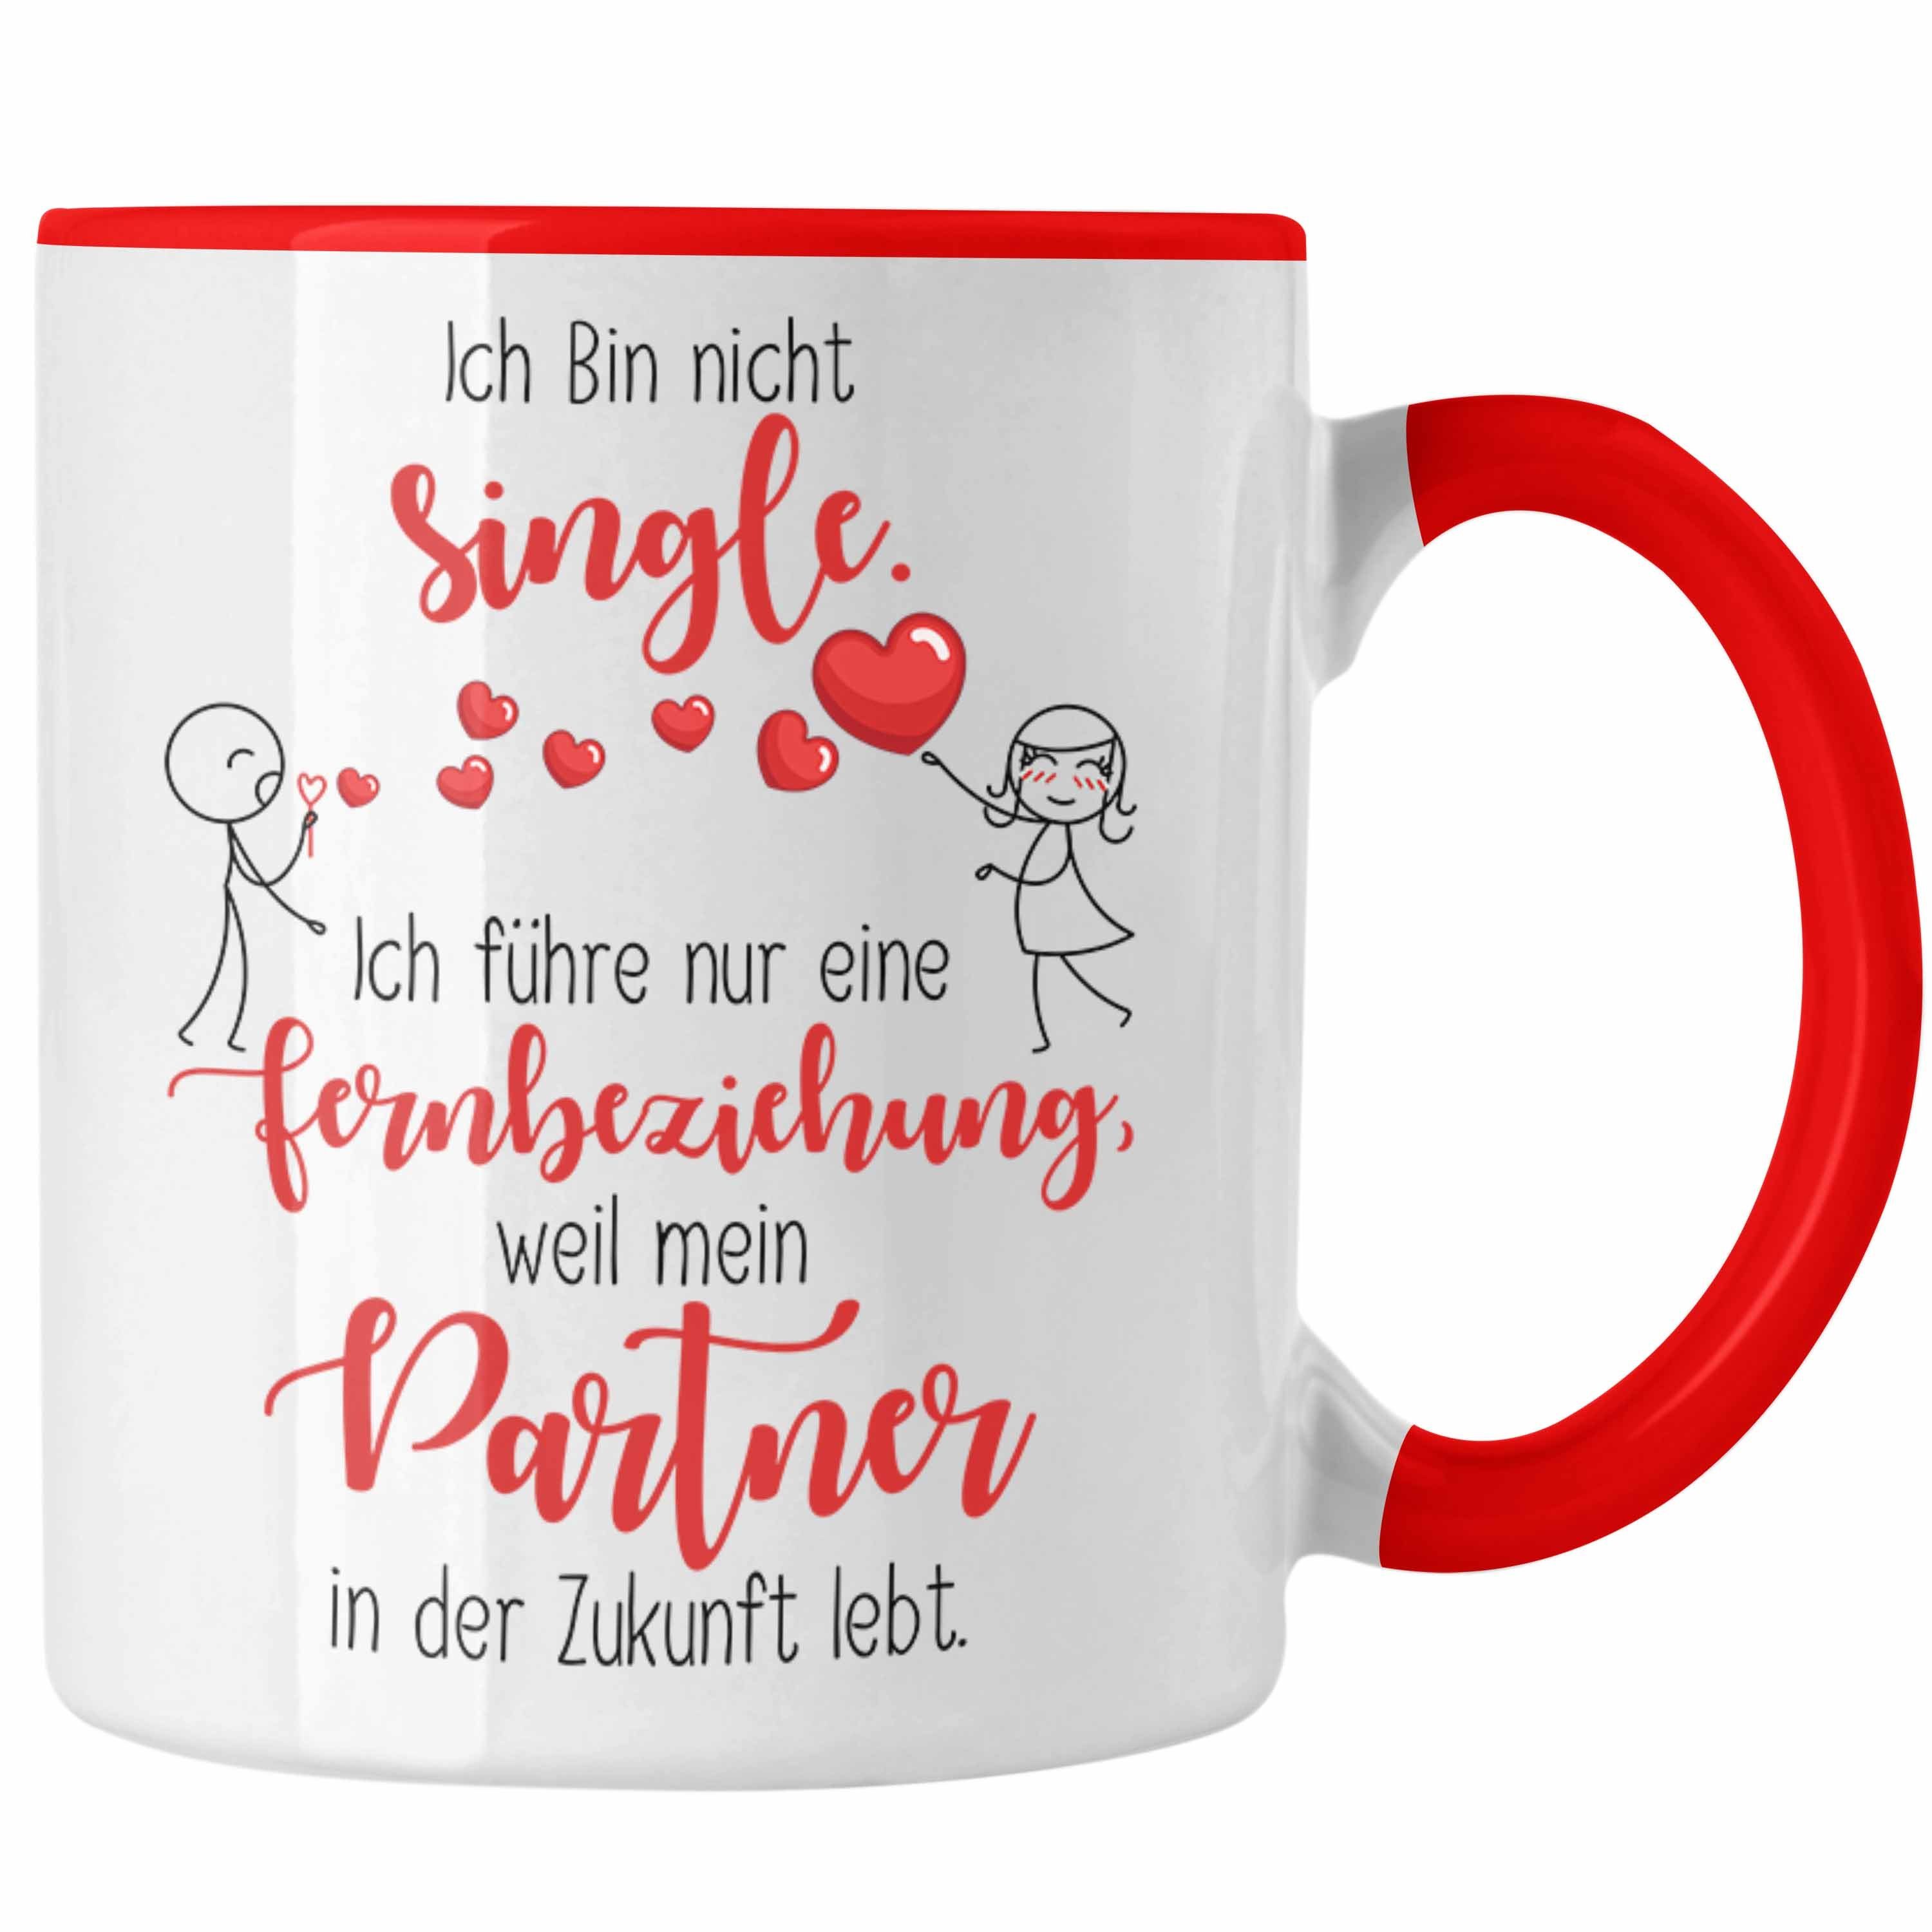 Single mit der Partner Tasse Trendation Rot Fernbeziehung Tasse Geschenk Zukunft in Geschen